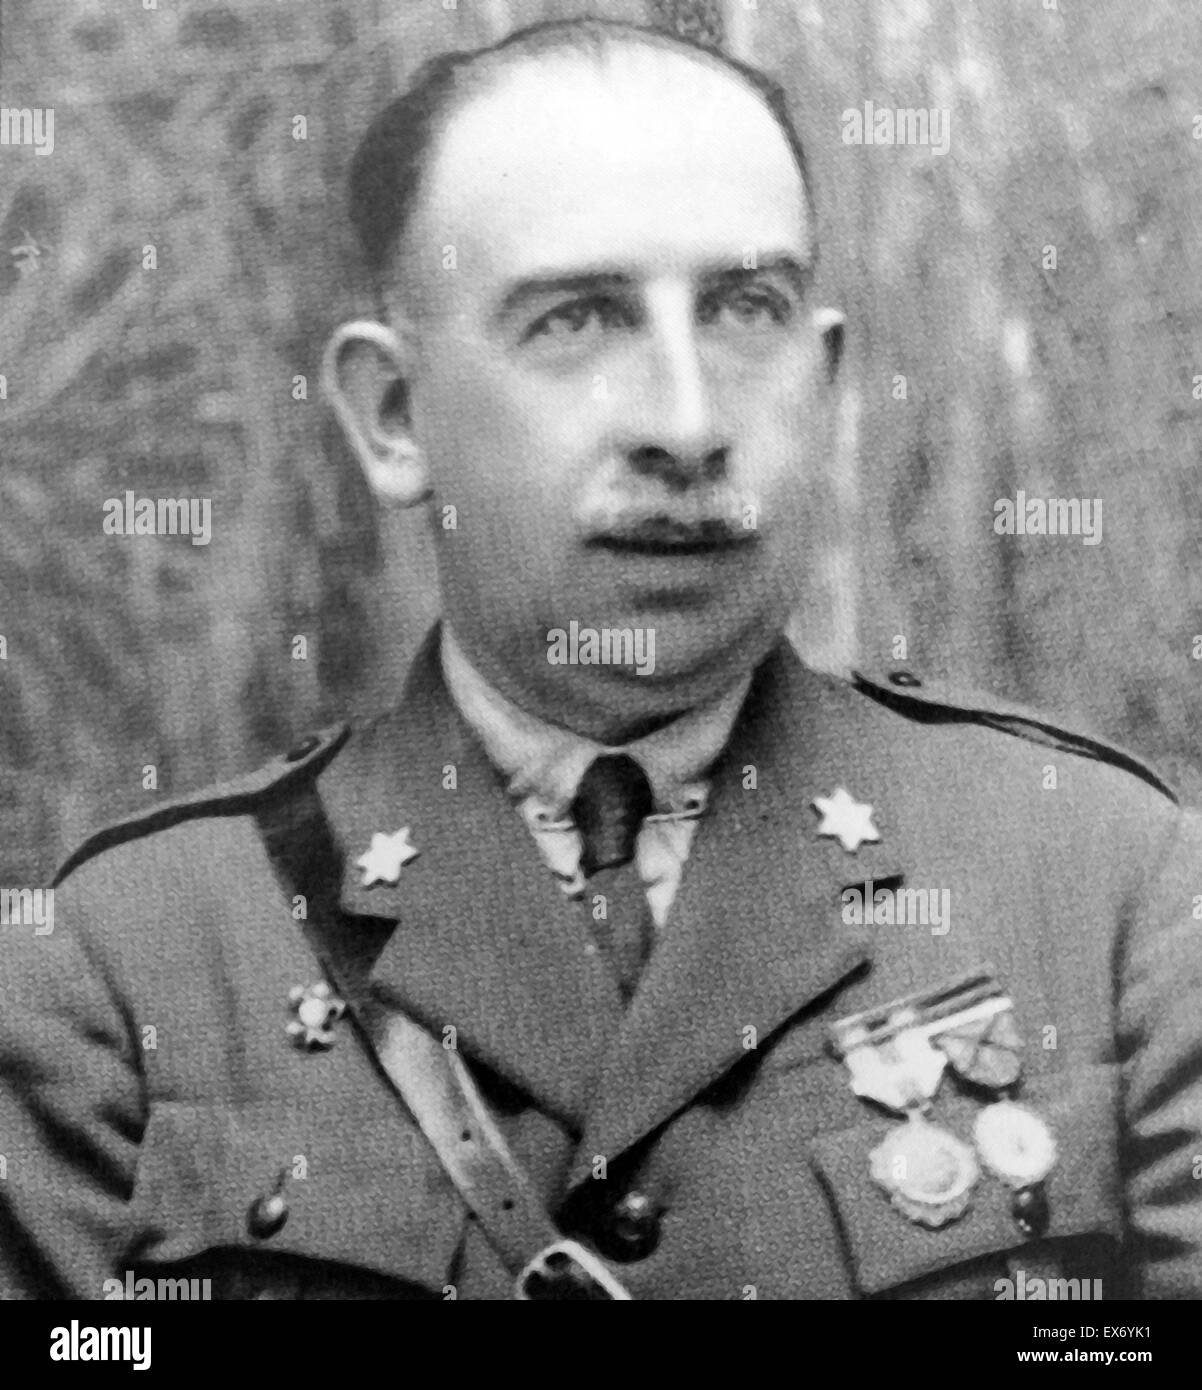 Luis Orgaz Yoldi (28 mai 1881, Vitoria - 31 janvier 1946, Madrid) était un général espagnol qui était une figure sur le côté nationaliste dans la guerre civile espagnole. Plus tard, il est devenu un critique du régime de Francisco Franco Banque D'Images